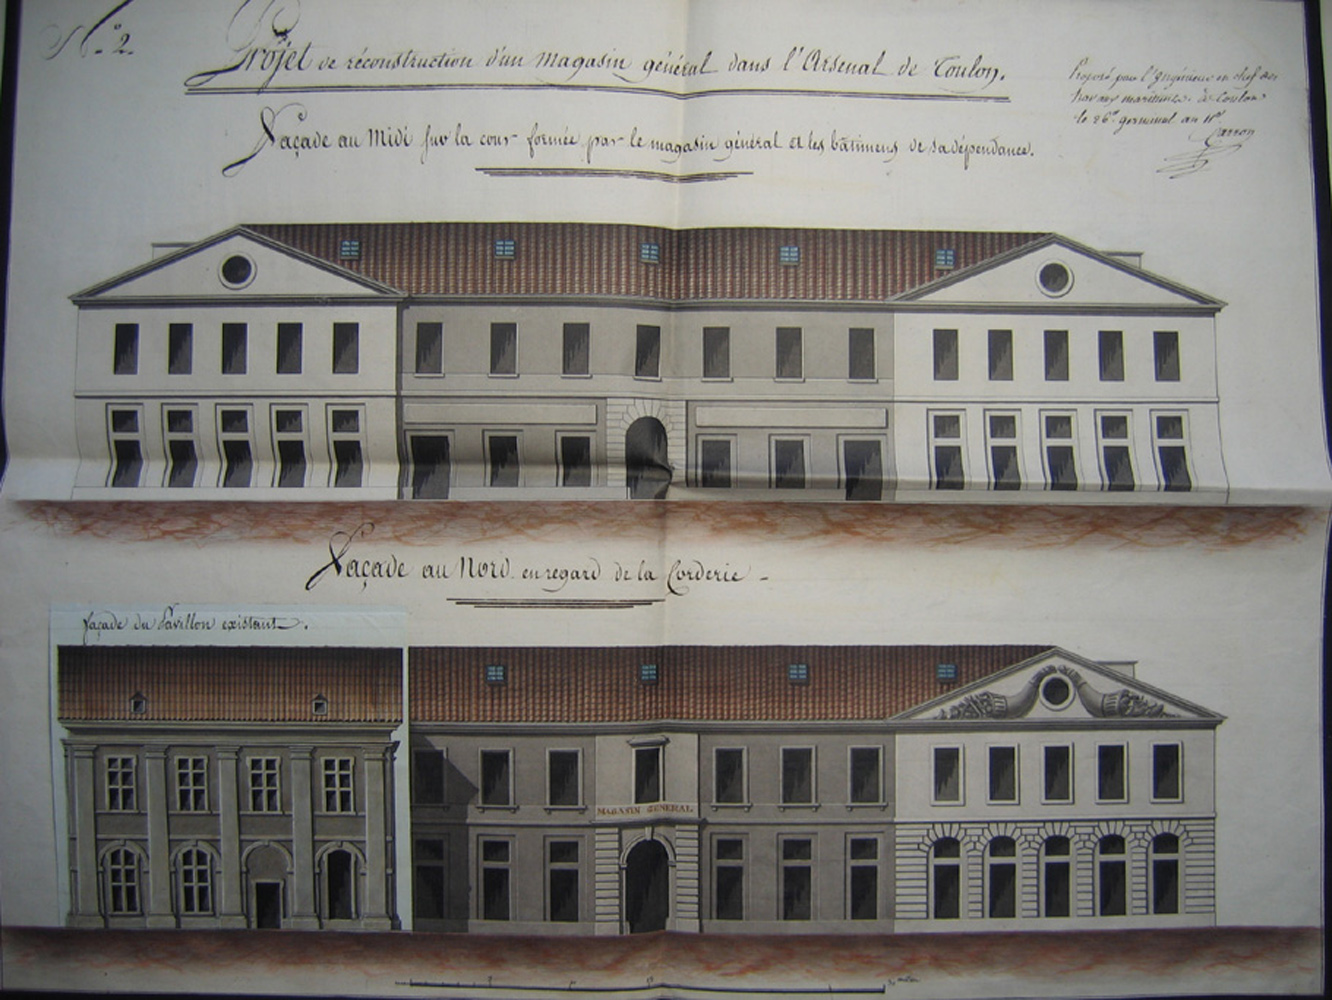 Projet de reconstruction d'un magasin général dans l'arsenal de Toulon. Façade au midi [...]. Façade au nord en regard de la corderie. 1803.